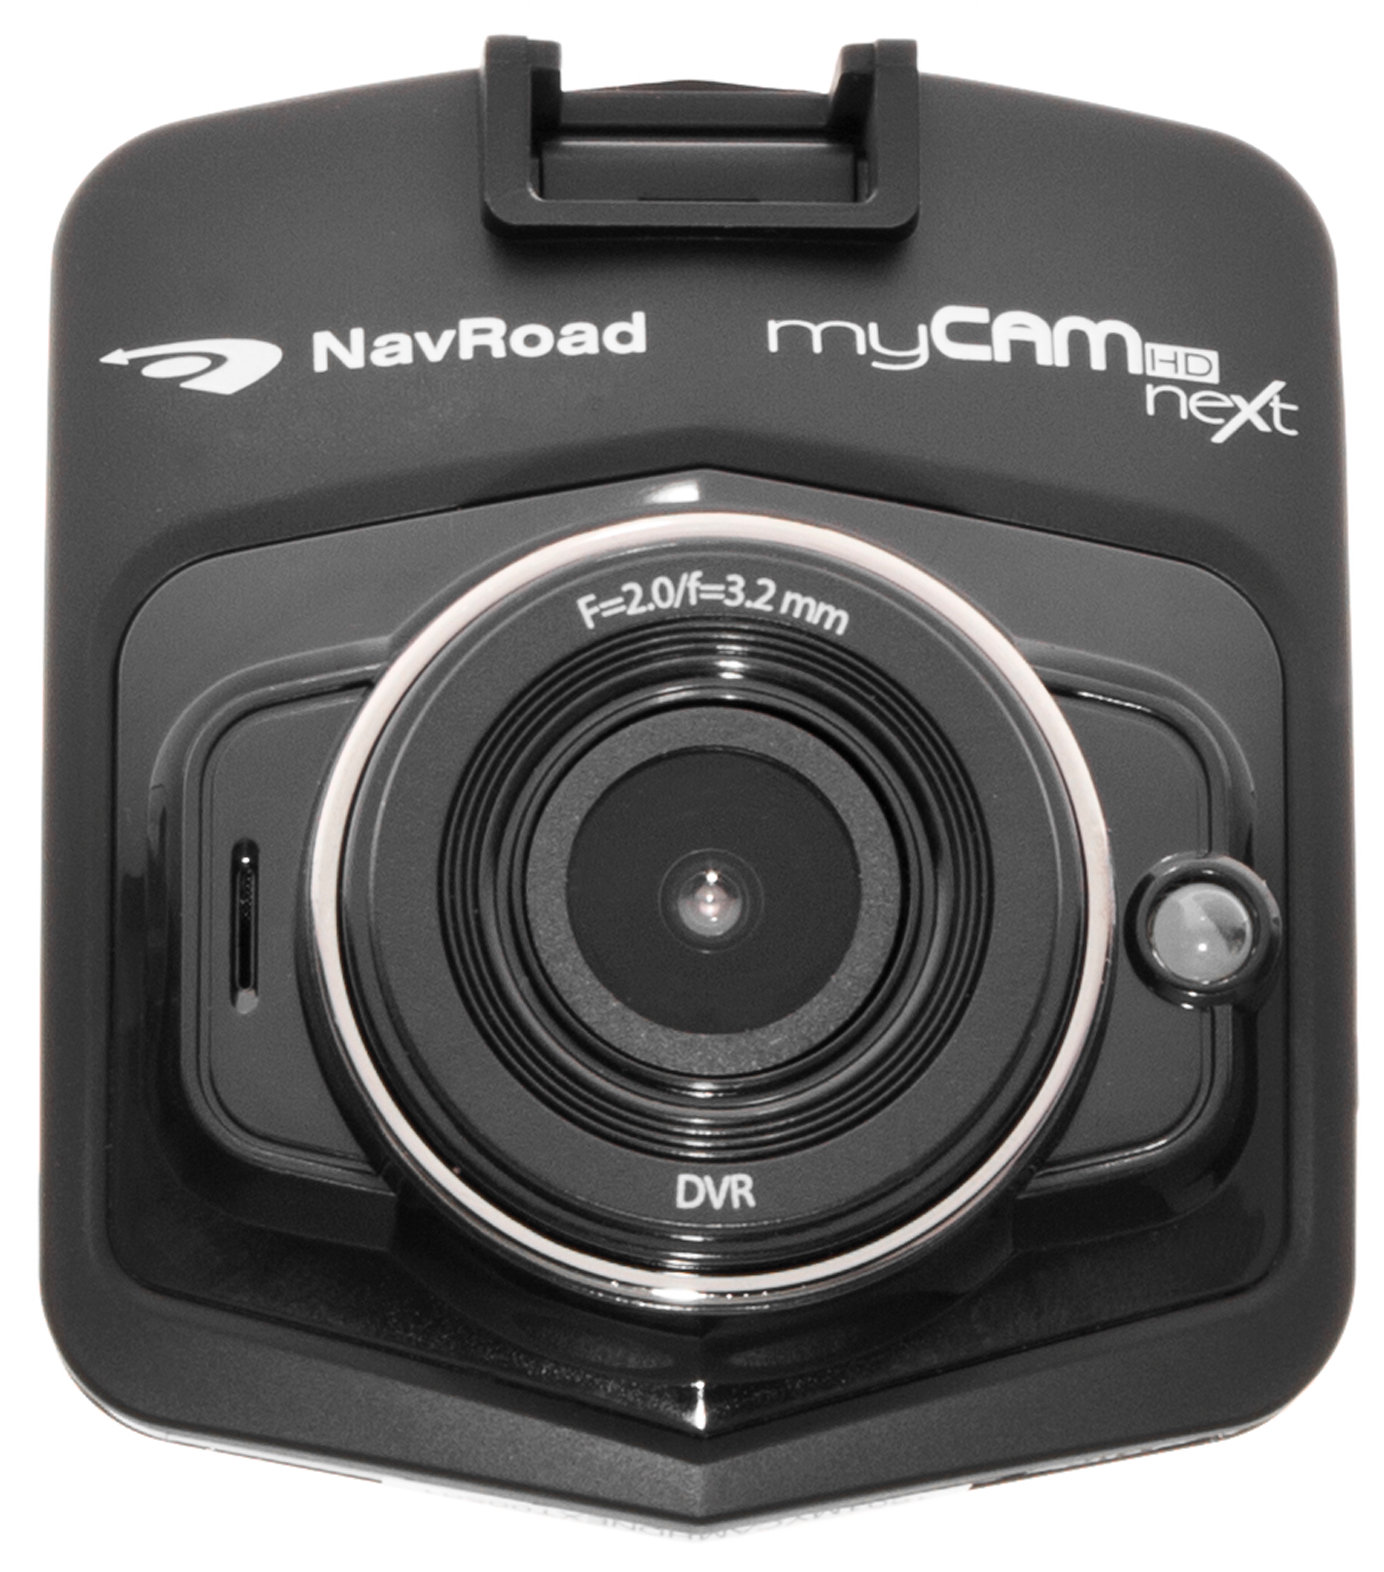 NAVROAD MyCam HD Next Wideorejestrator - niskie ceny i opinie w Media Expert